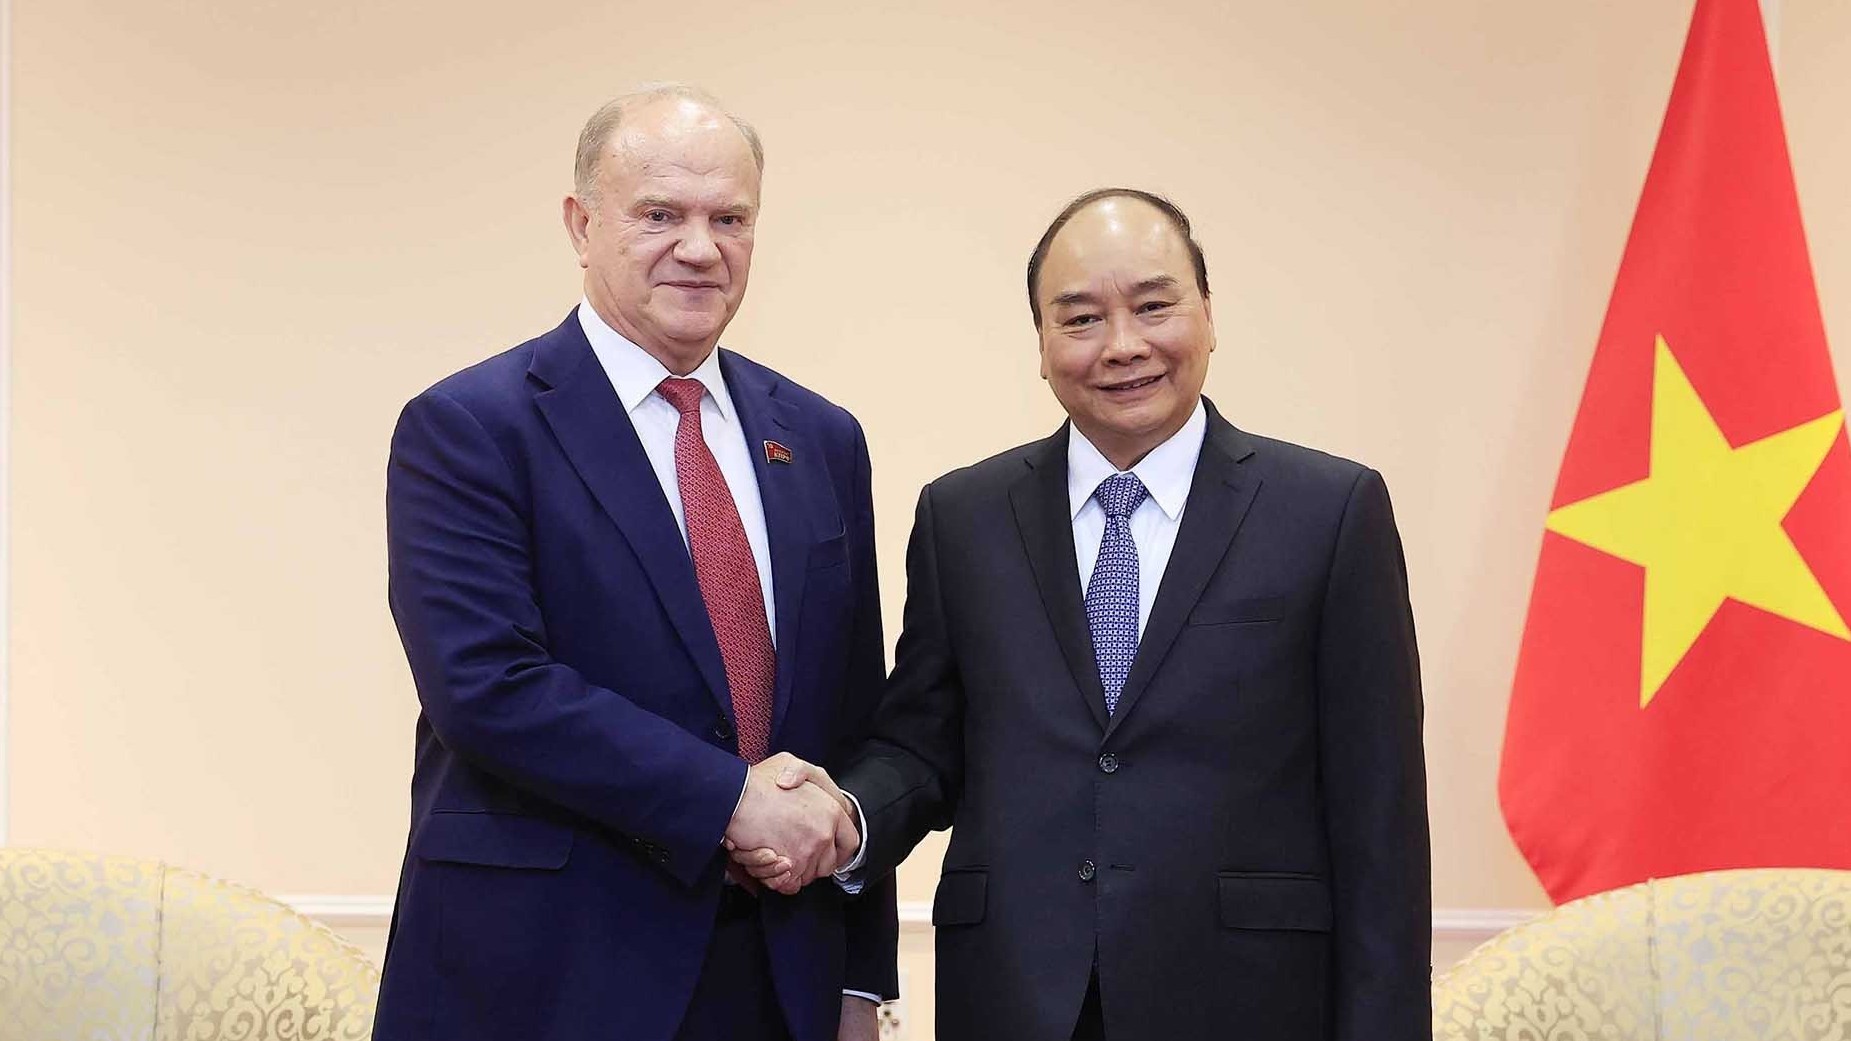 Tiếp tục thúc đẩy hợp tác song phương giữa hai Đảng Cộng sản Việt Nam và Liên bang Nga